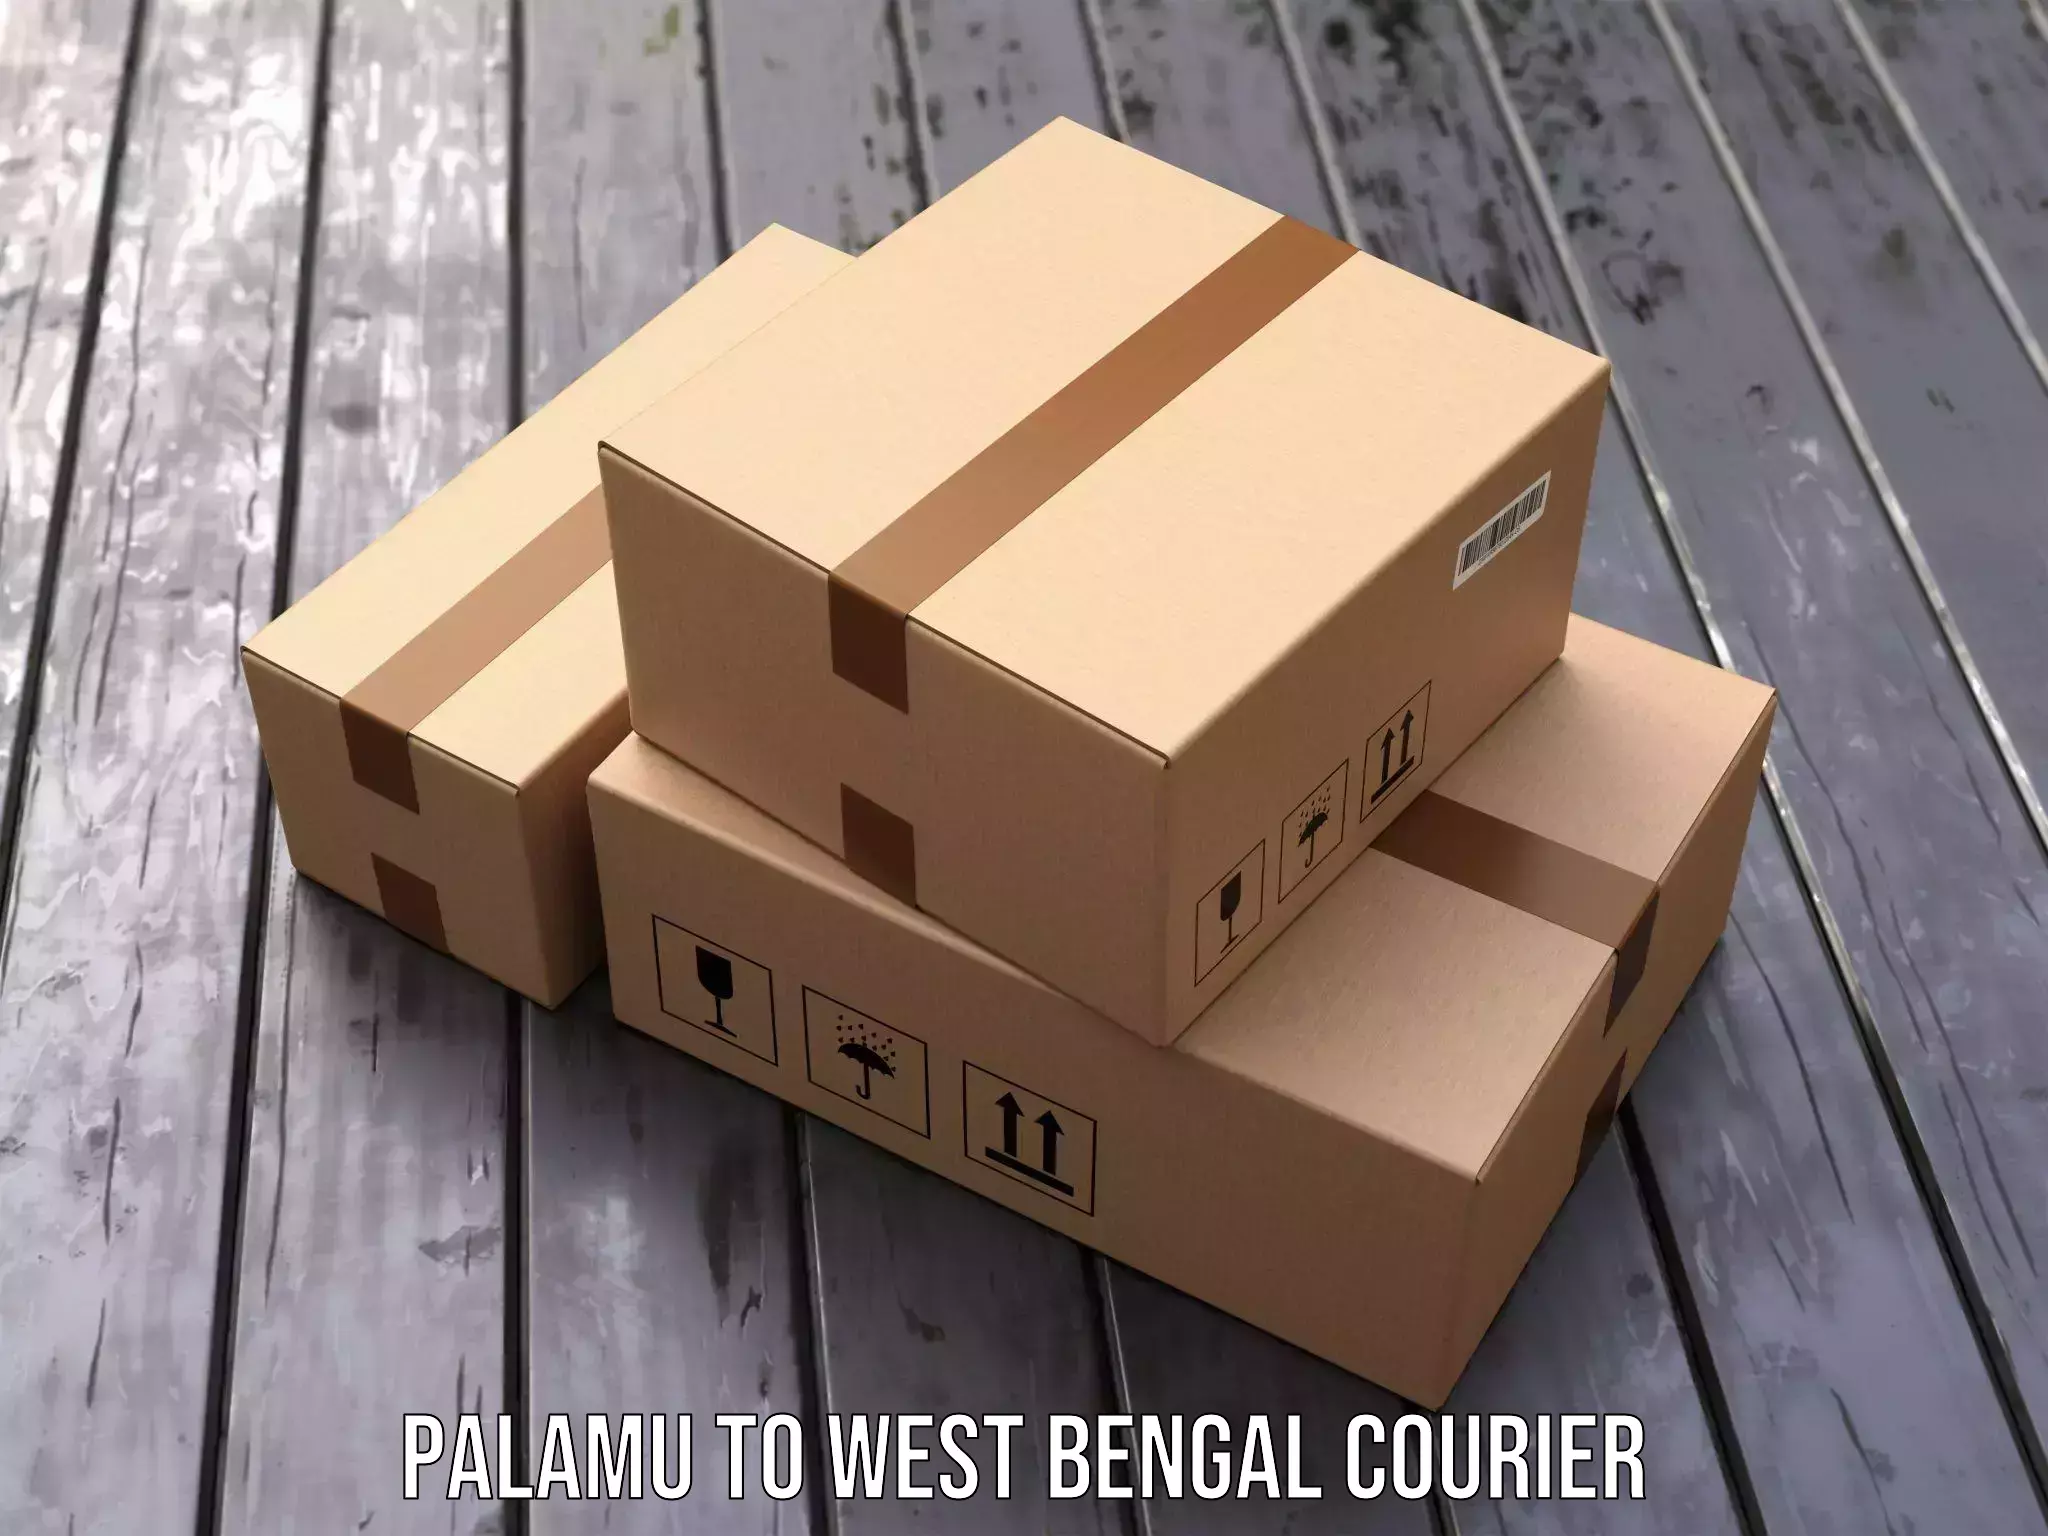 Budget-friendly shipping Palamu to Chittaranjan